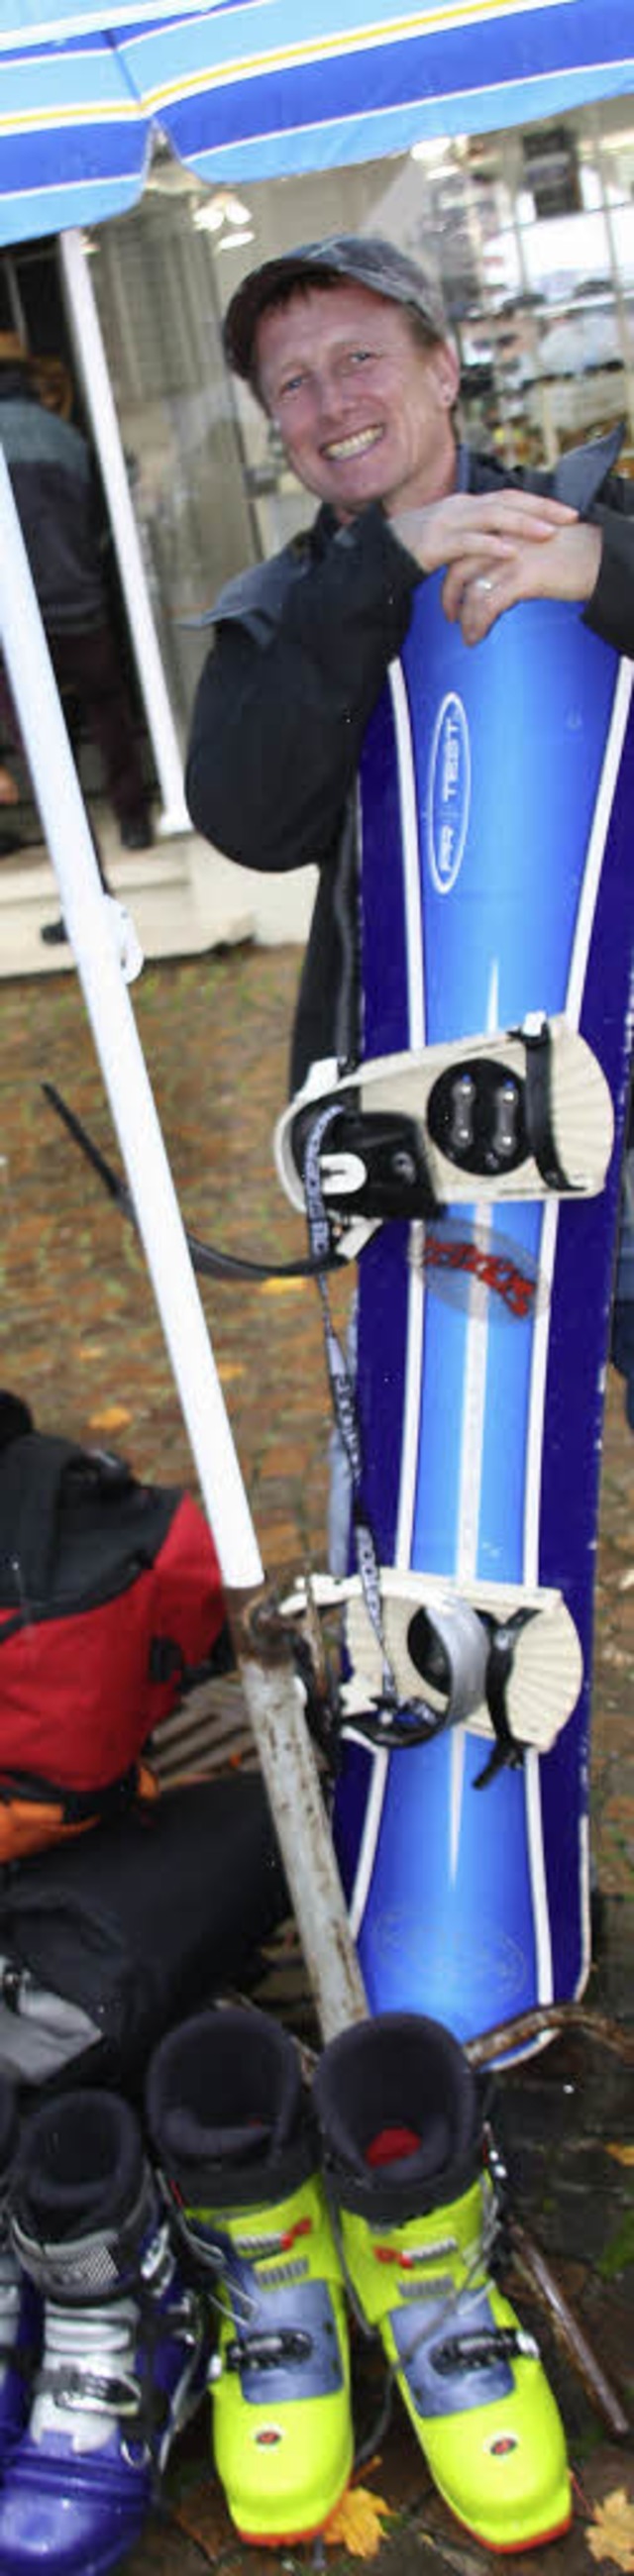 Wintersportfans konnten sich  gnstig mit Skiern und Zubehr eindecken.   | Foto: Andreas Peikert